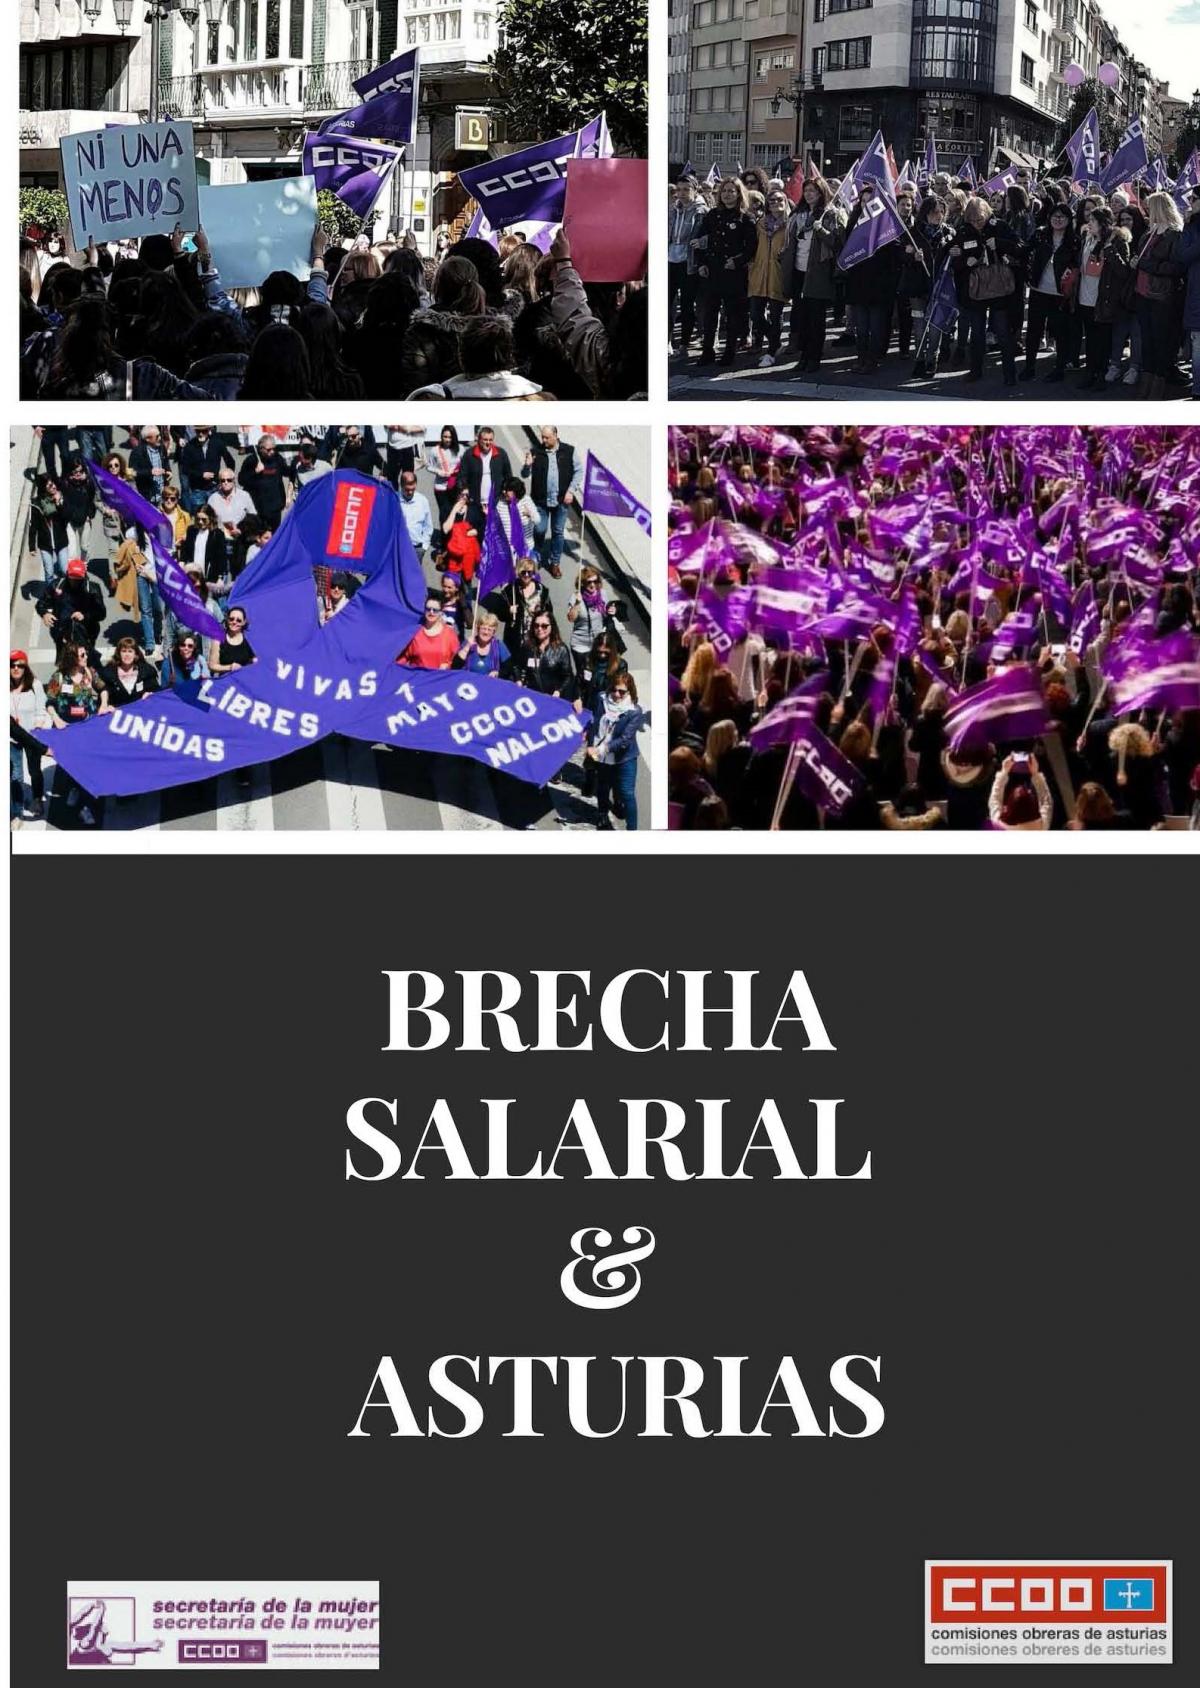 Brecha salarial en Asturias.